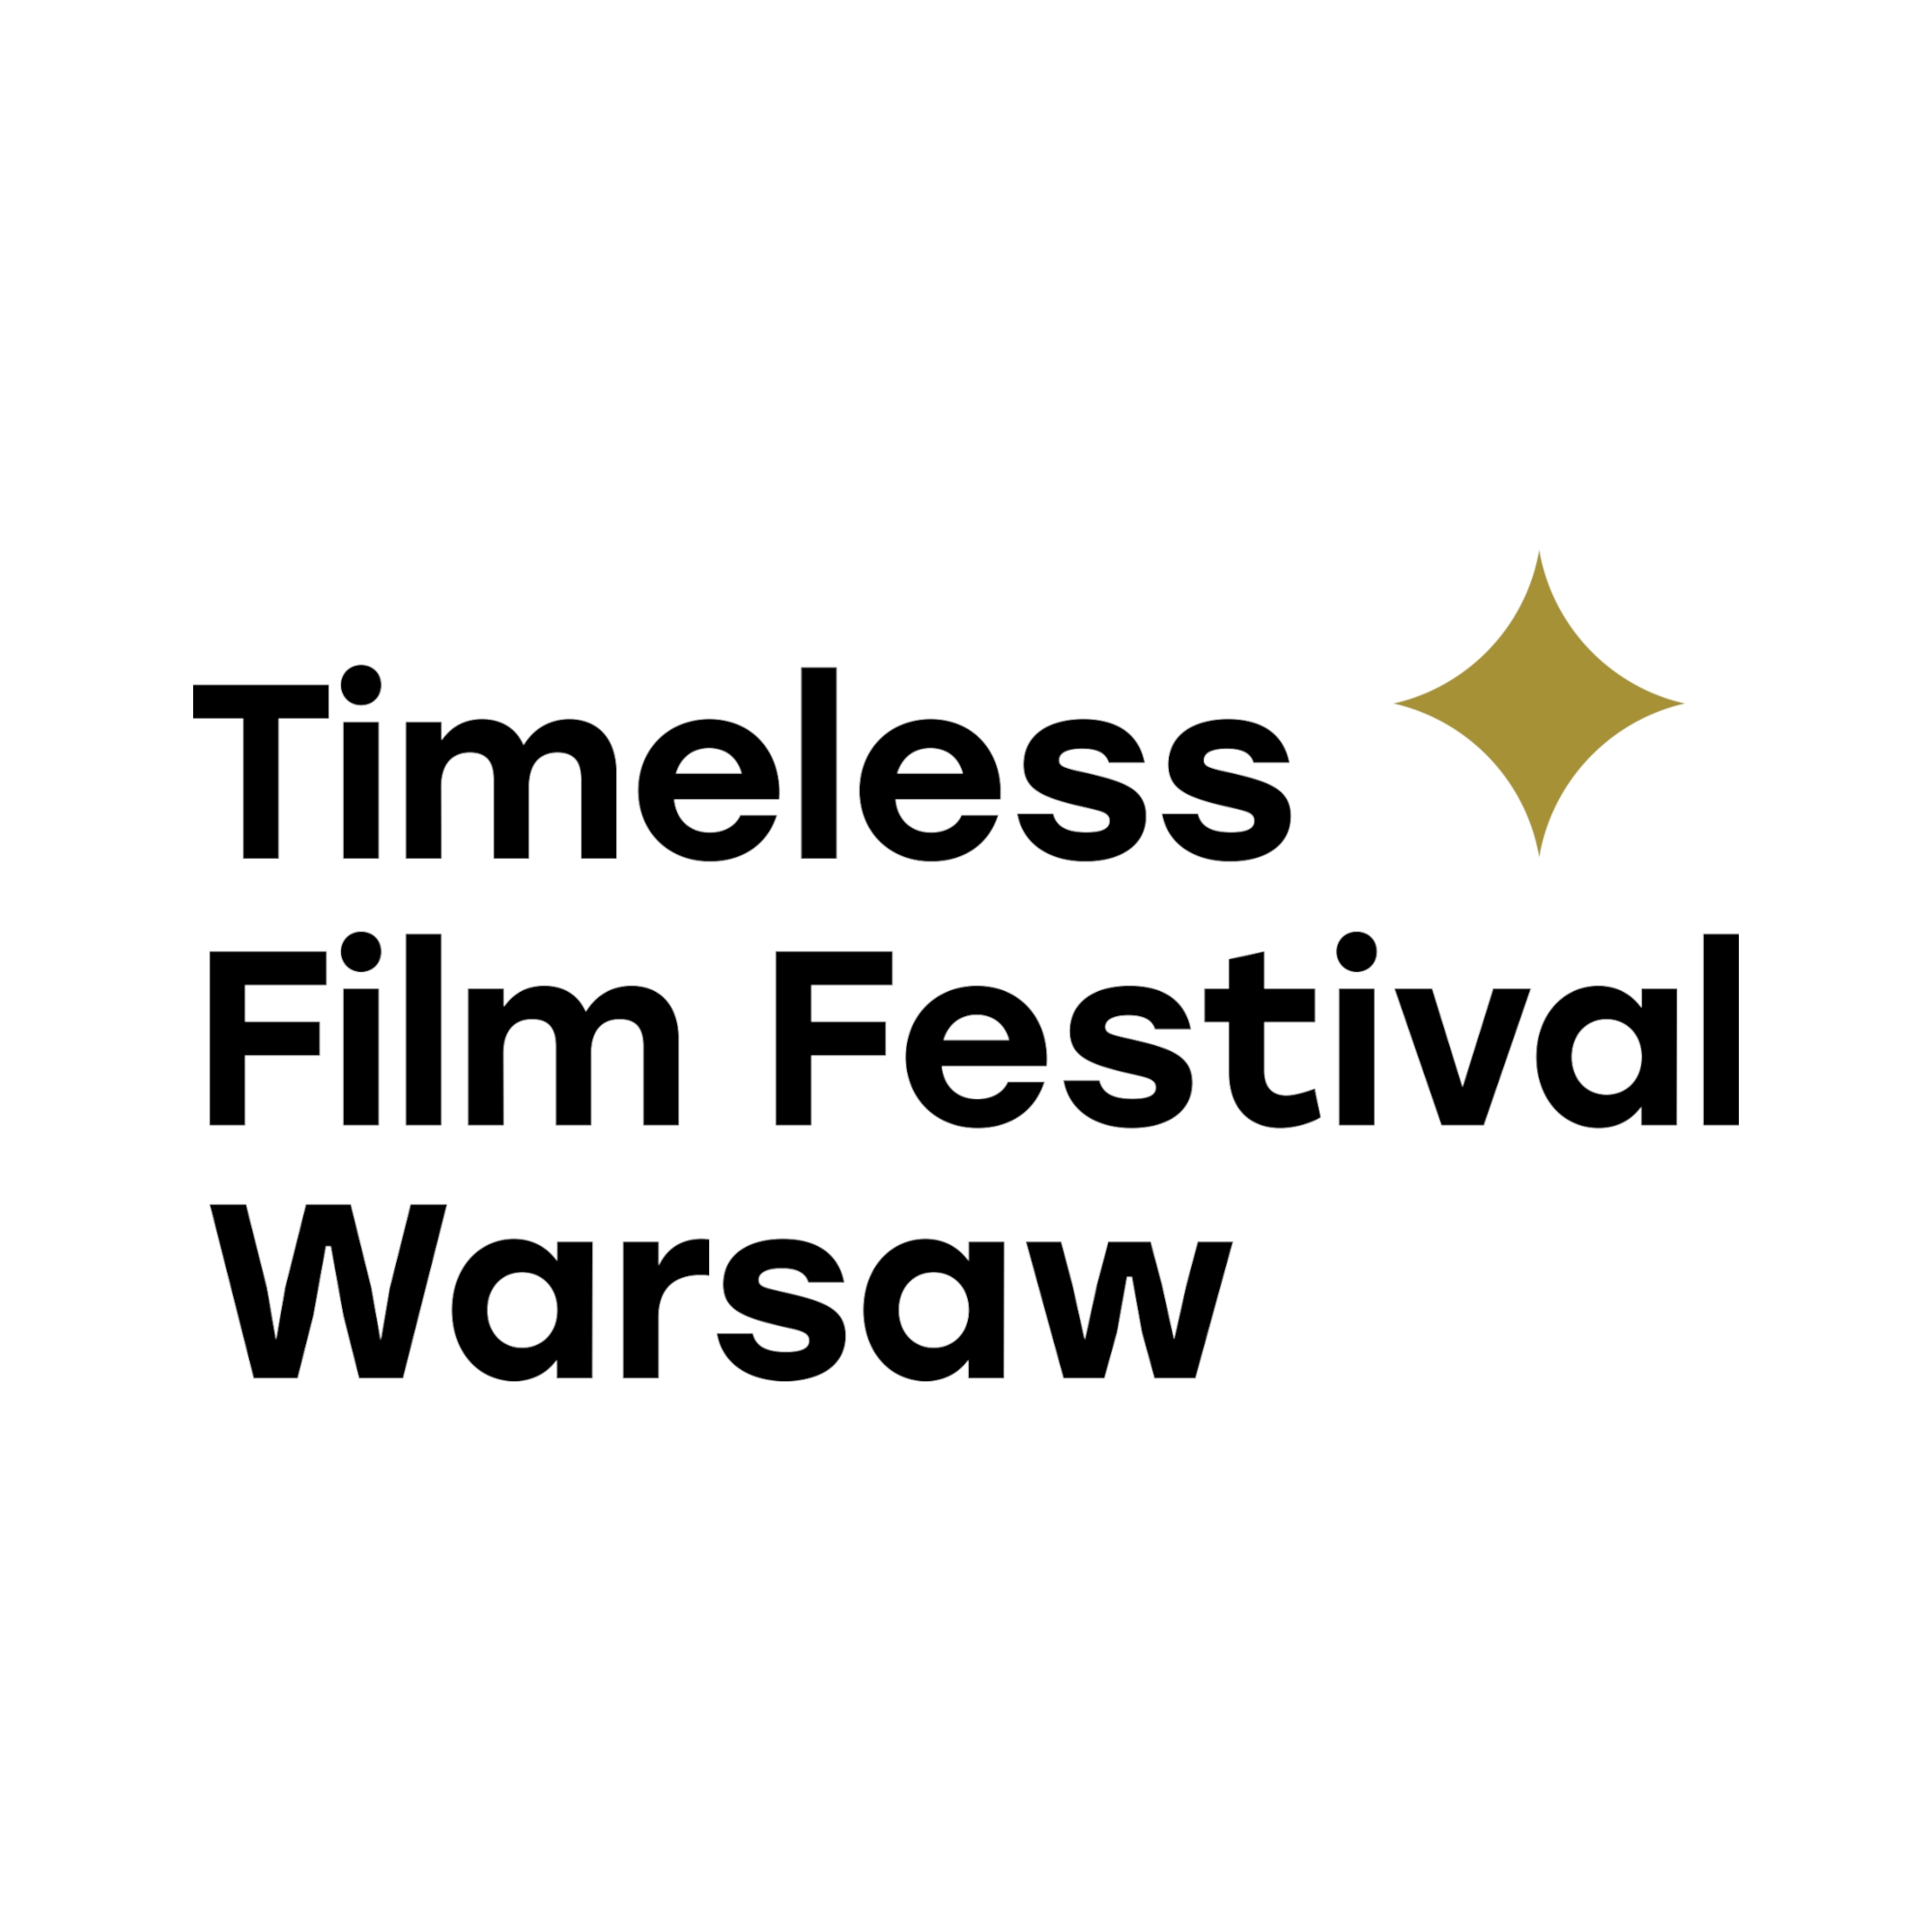 Timeless Film Festival